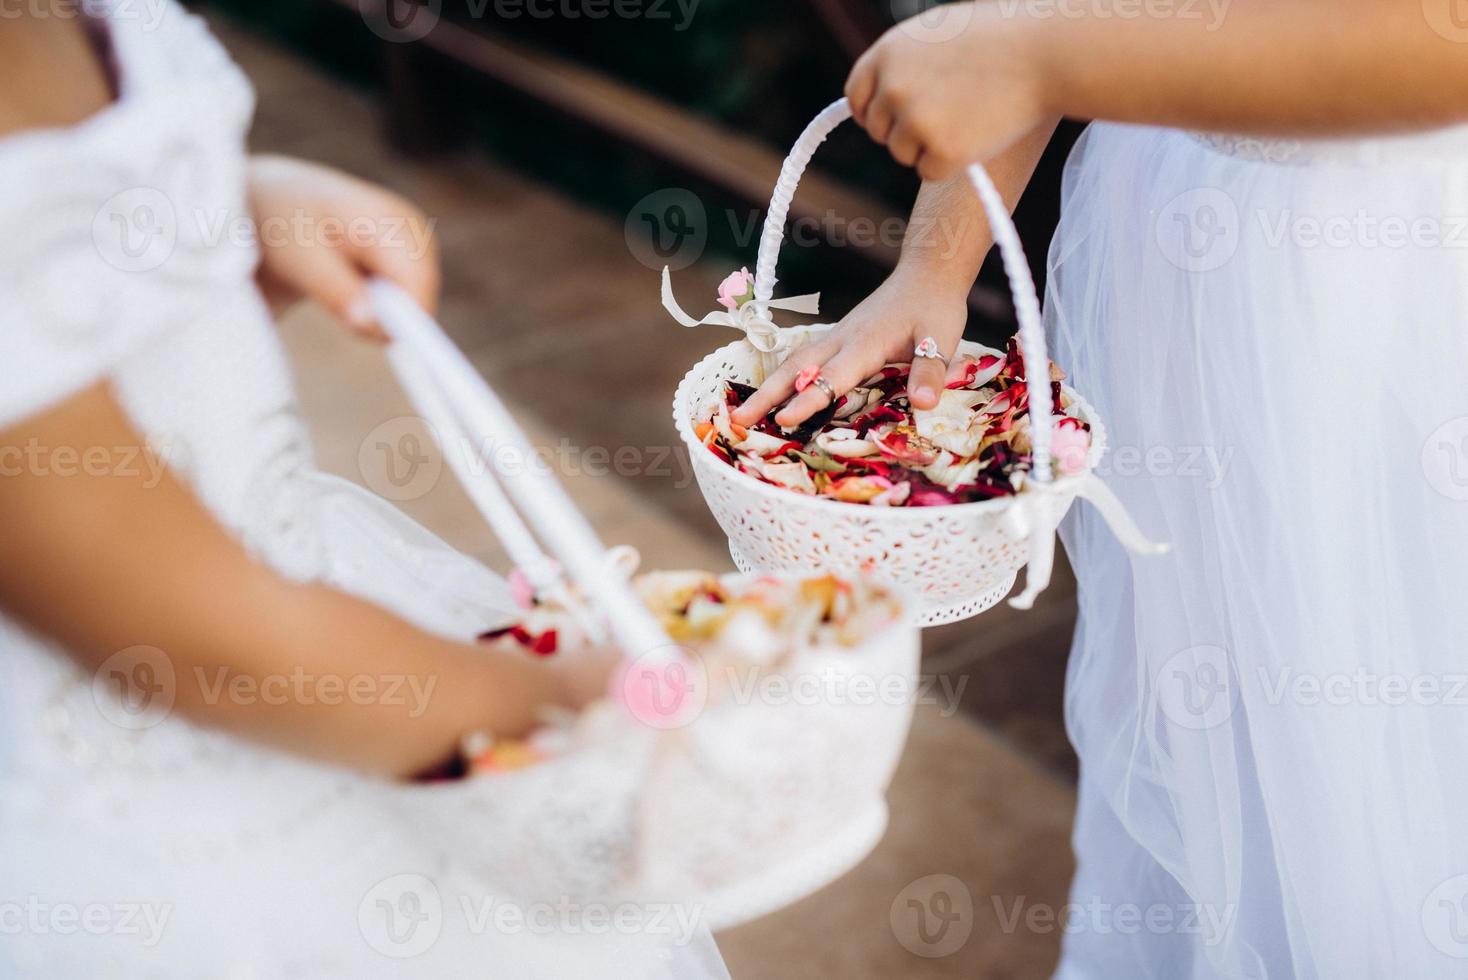 pétalas de rosa para a cerimônia em cestas de casamento foto